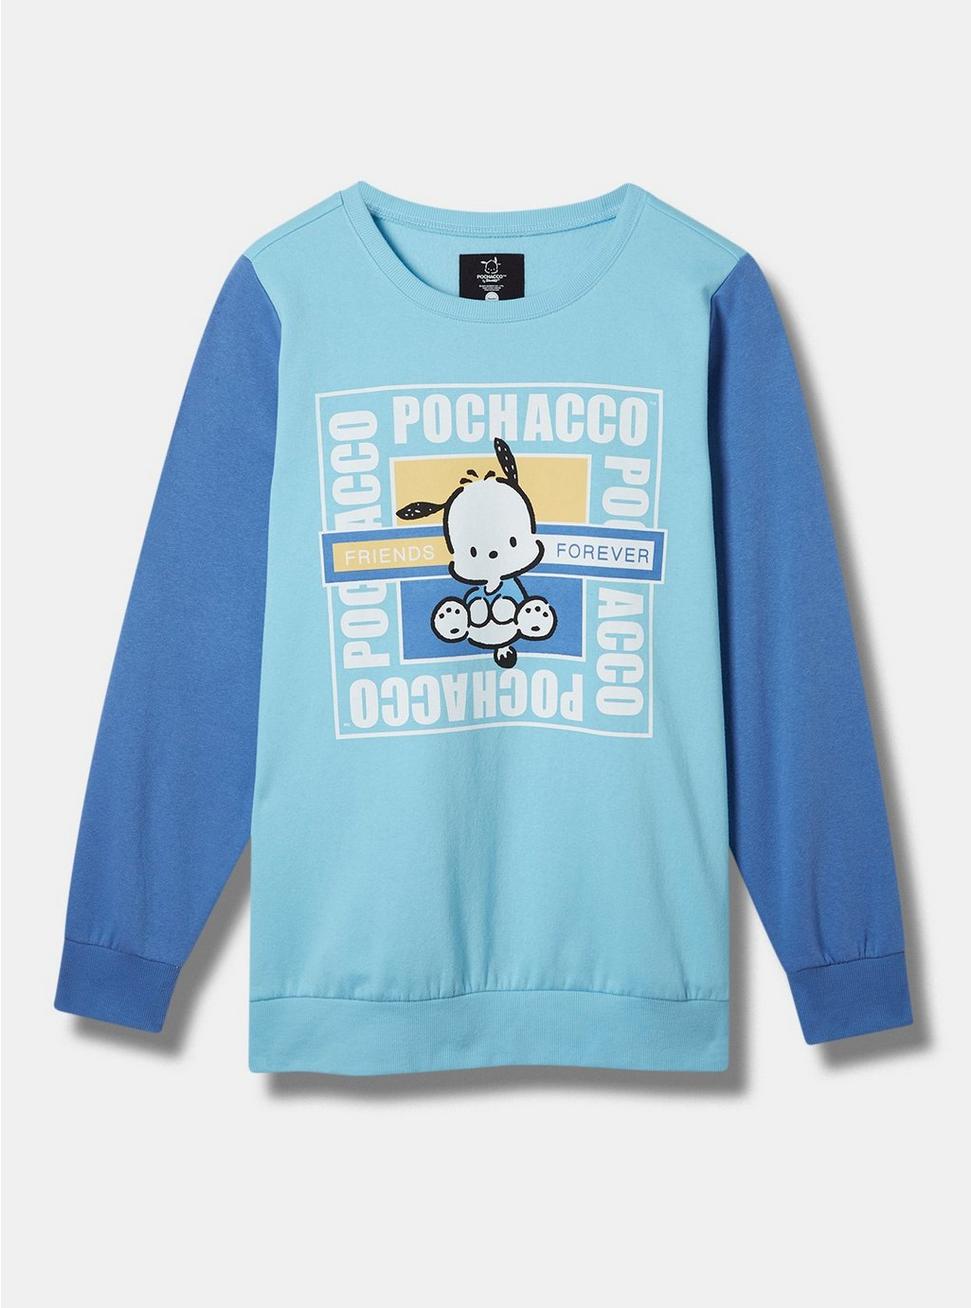 Pochacco Cozy Fleece Color Block Sweatshirt, BLUE, hi-res